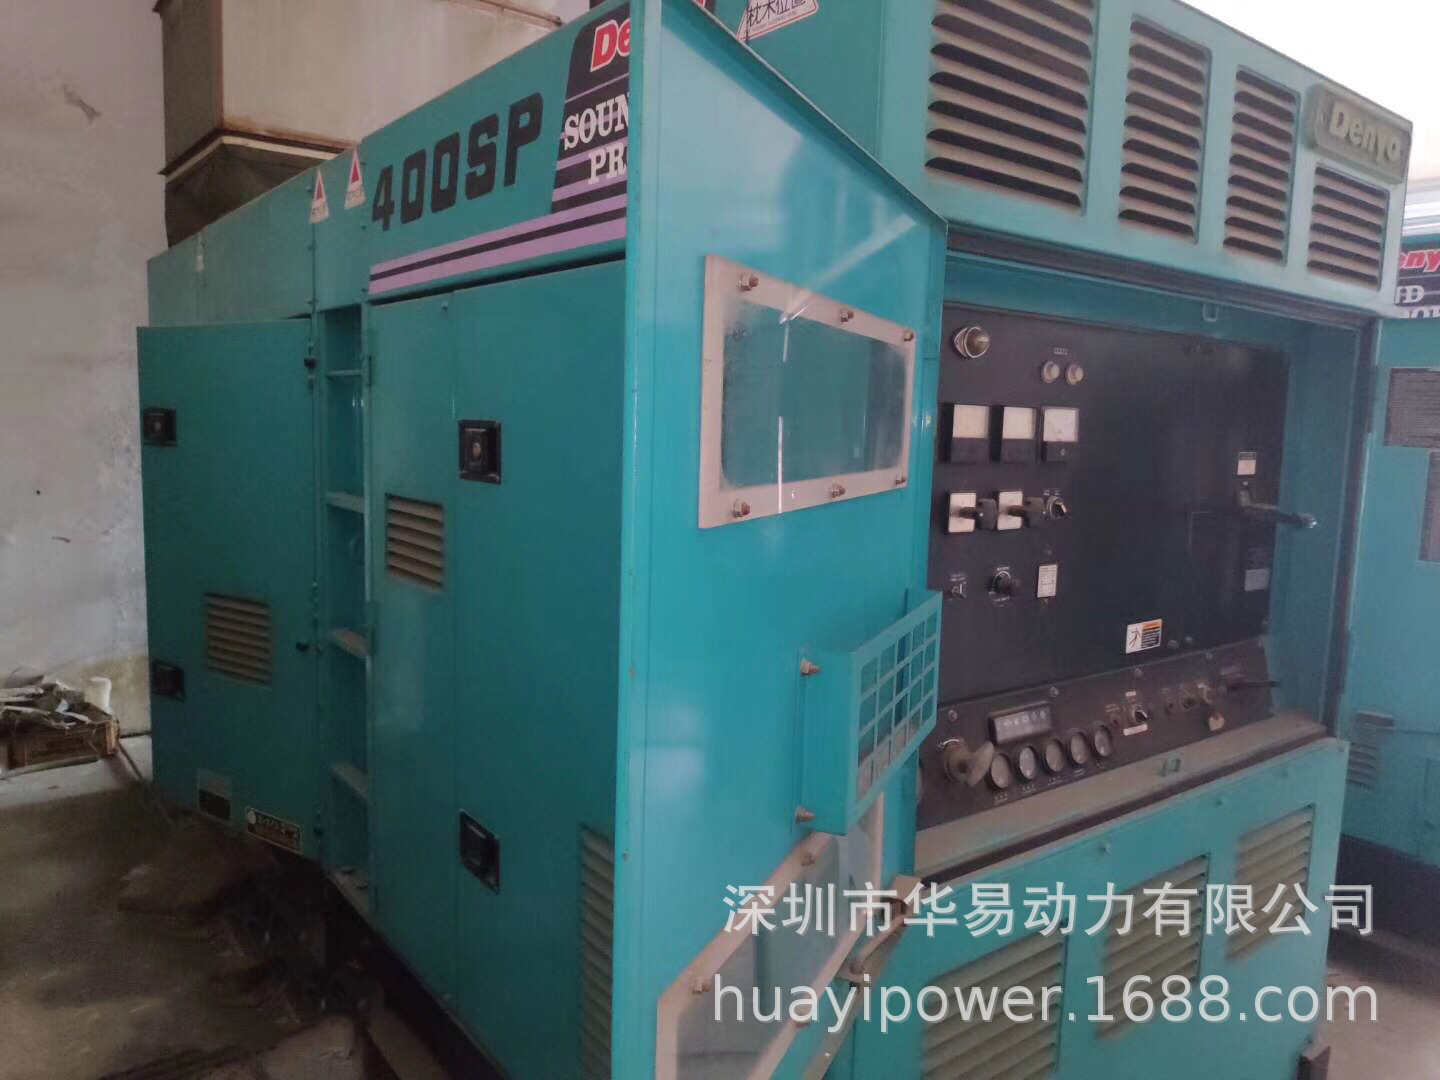 两台日本原装Denyo电友300千瓦静音柴油小松发电机出售DCA-400SPK示例图3